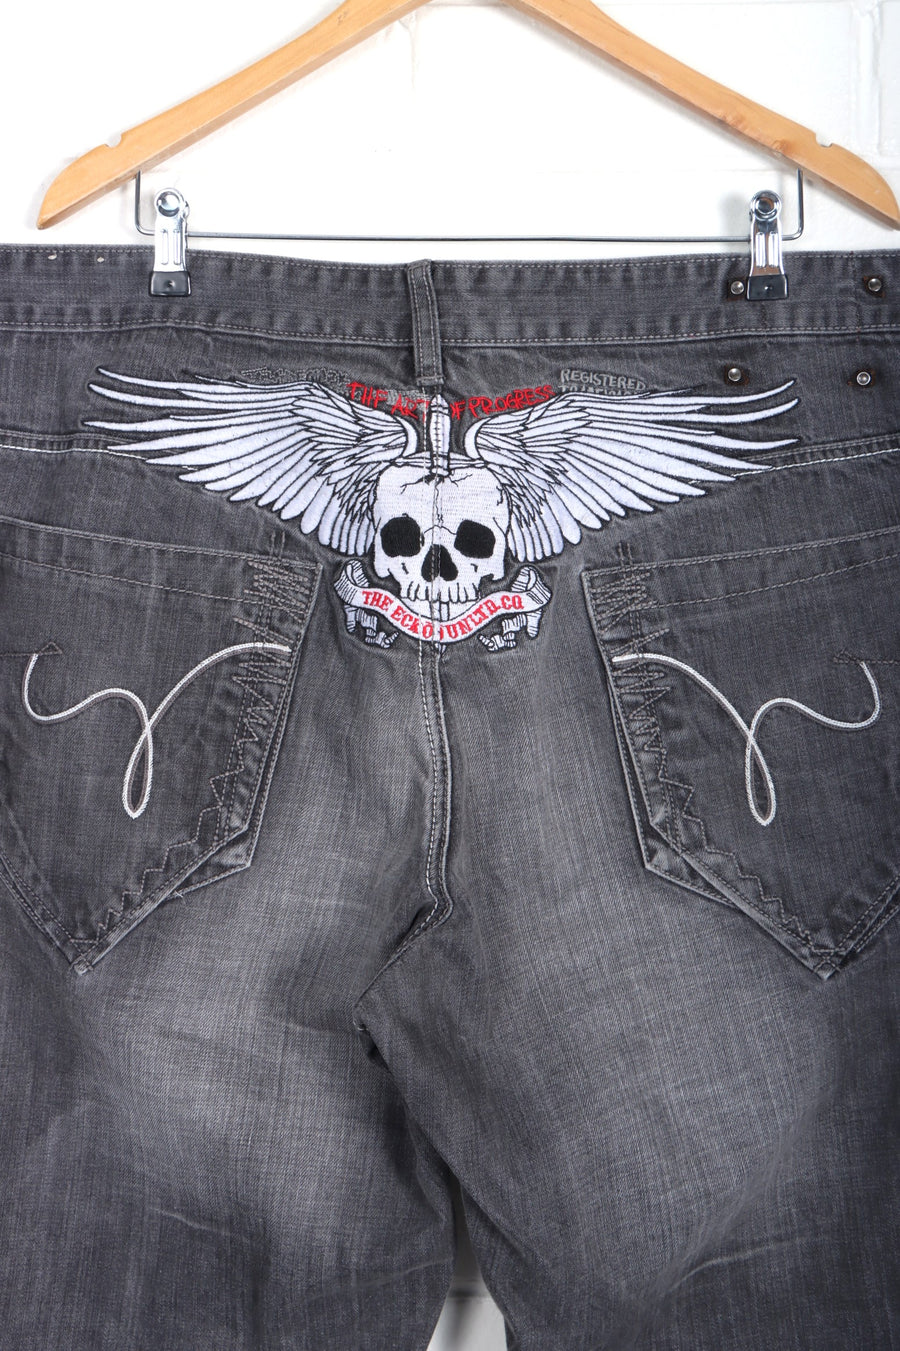 ECKO UNLTD Embroidered Skull Wings Y2K Jeans (42)